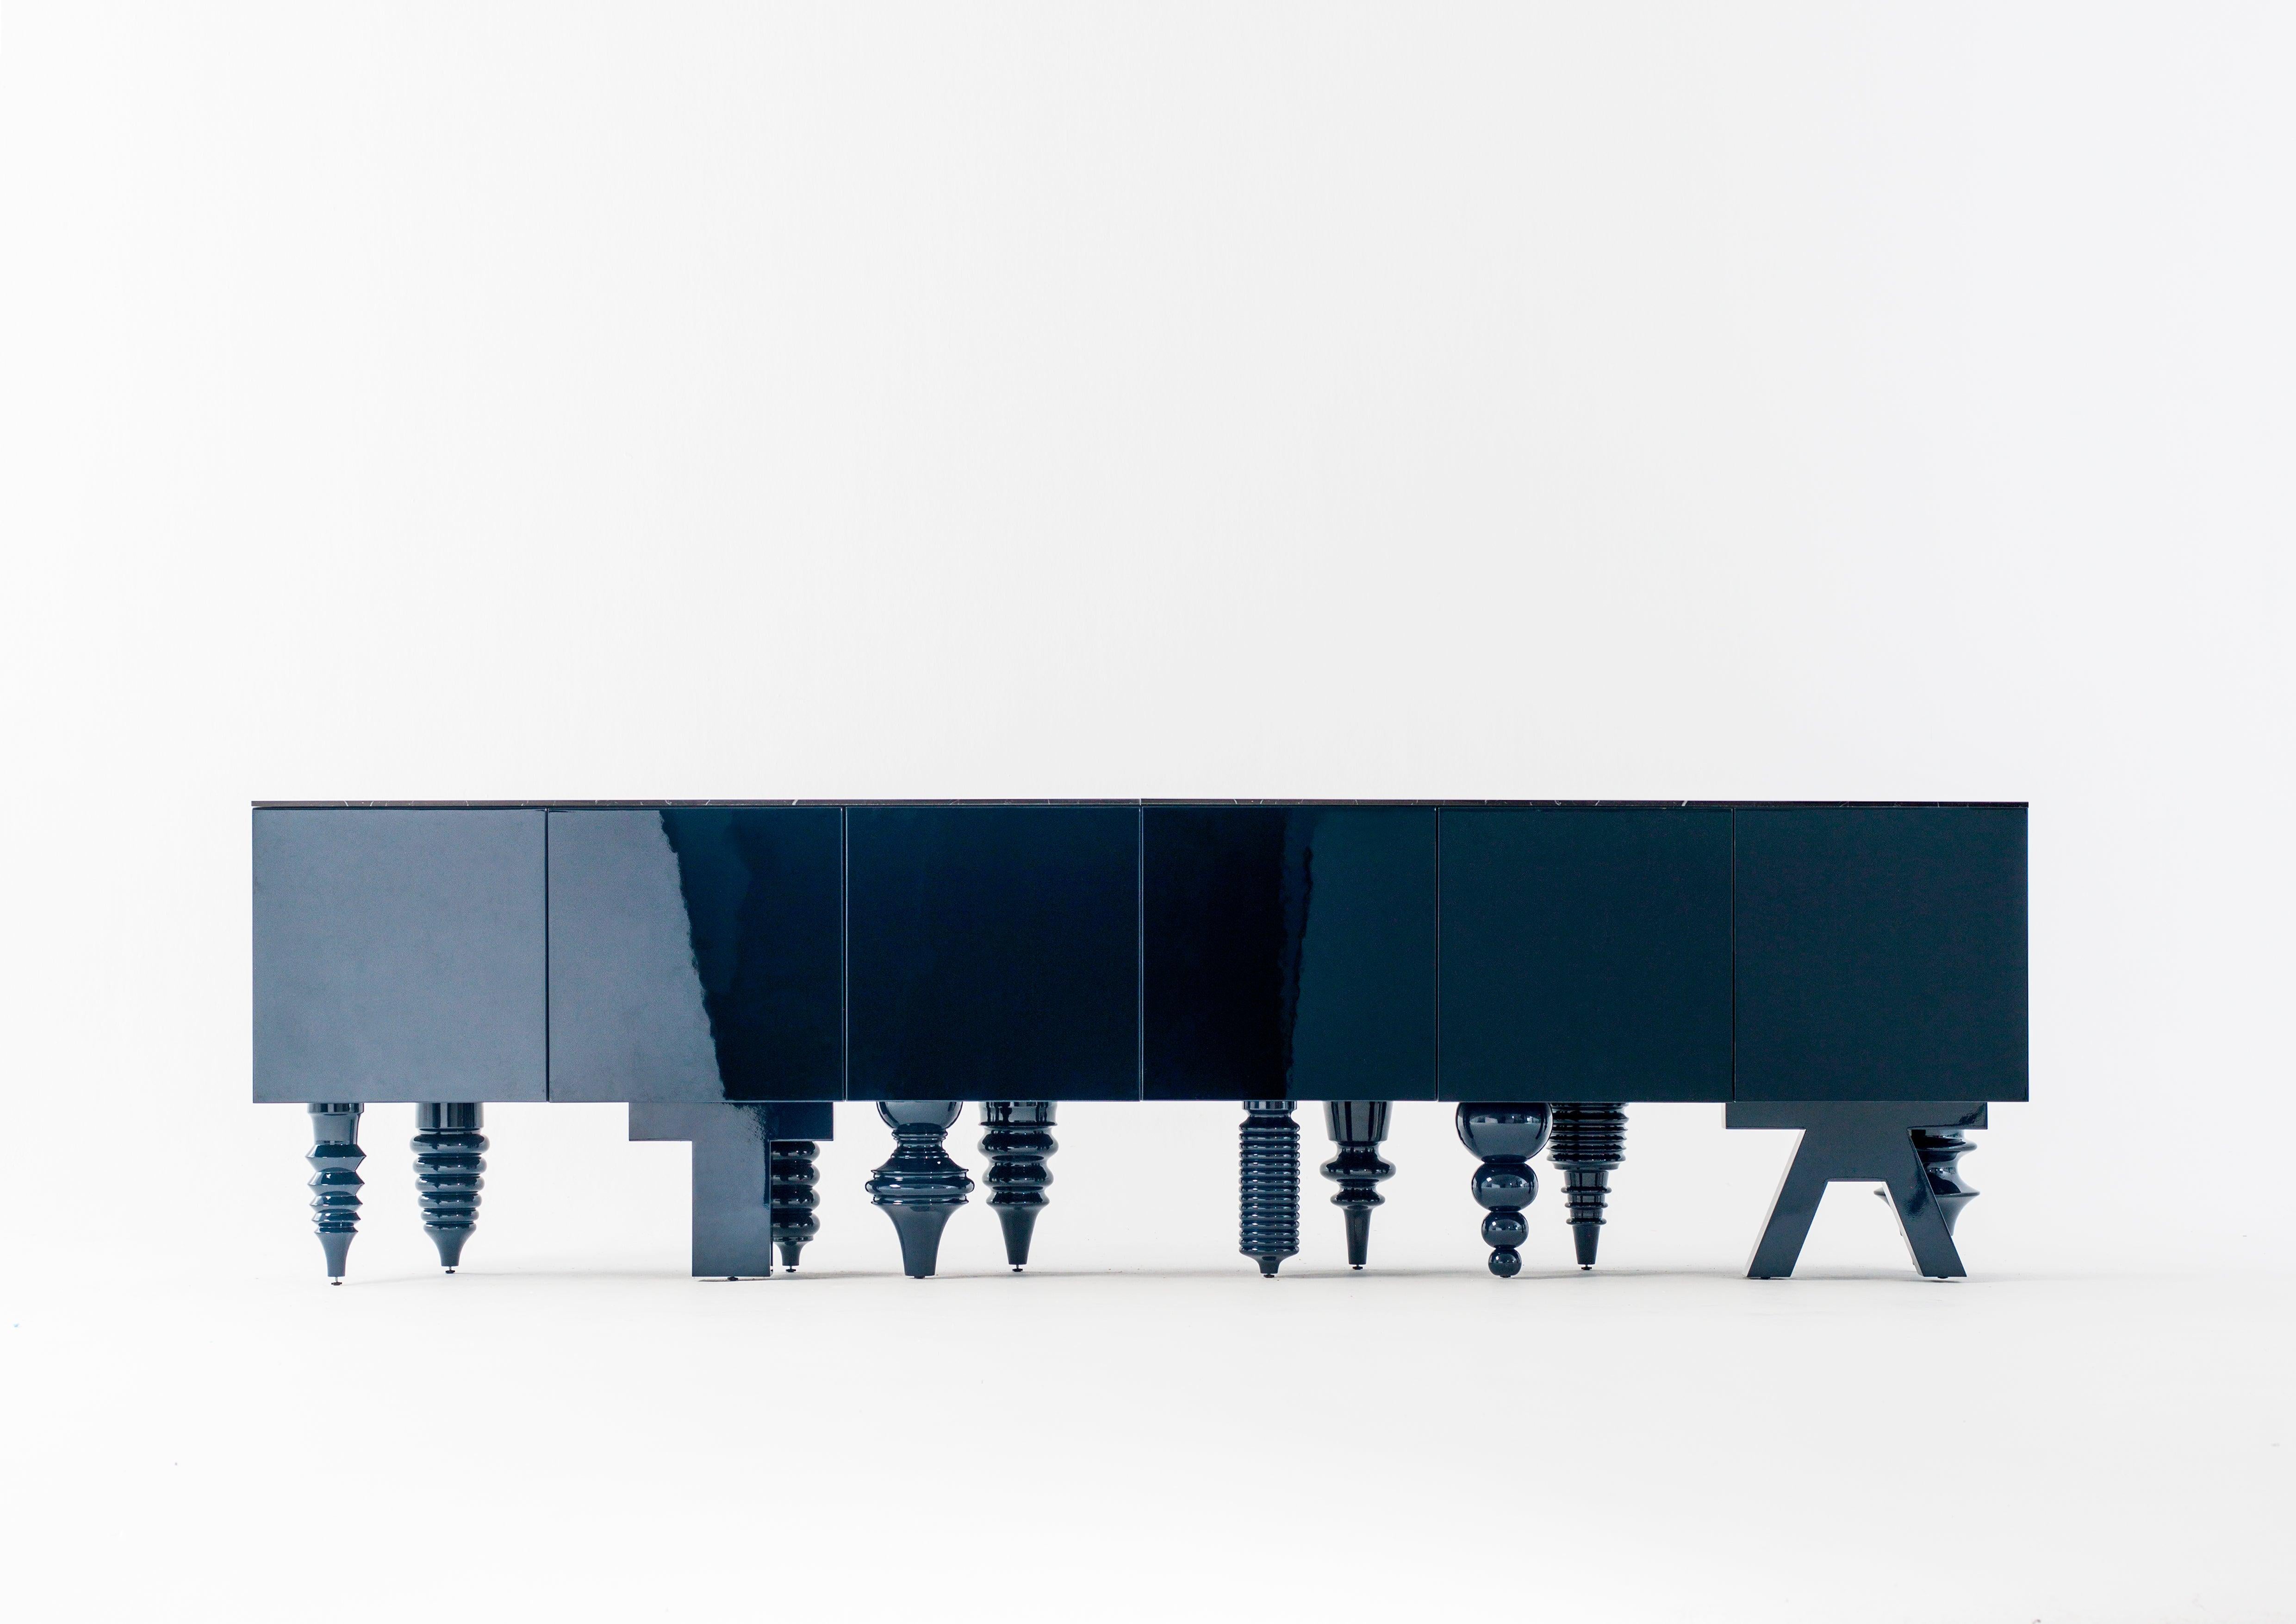 Jaime Hayon cabinet bleu multi-pieds conçu en 2016 et fabriqué par BD Barcelona.

Un meuble modulaire polyvalent et multi-pieds. Il est disponible avec une douzaine de designs différents inspirés de différents styles. Il permet diverses